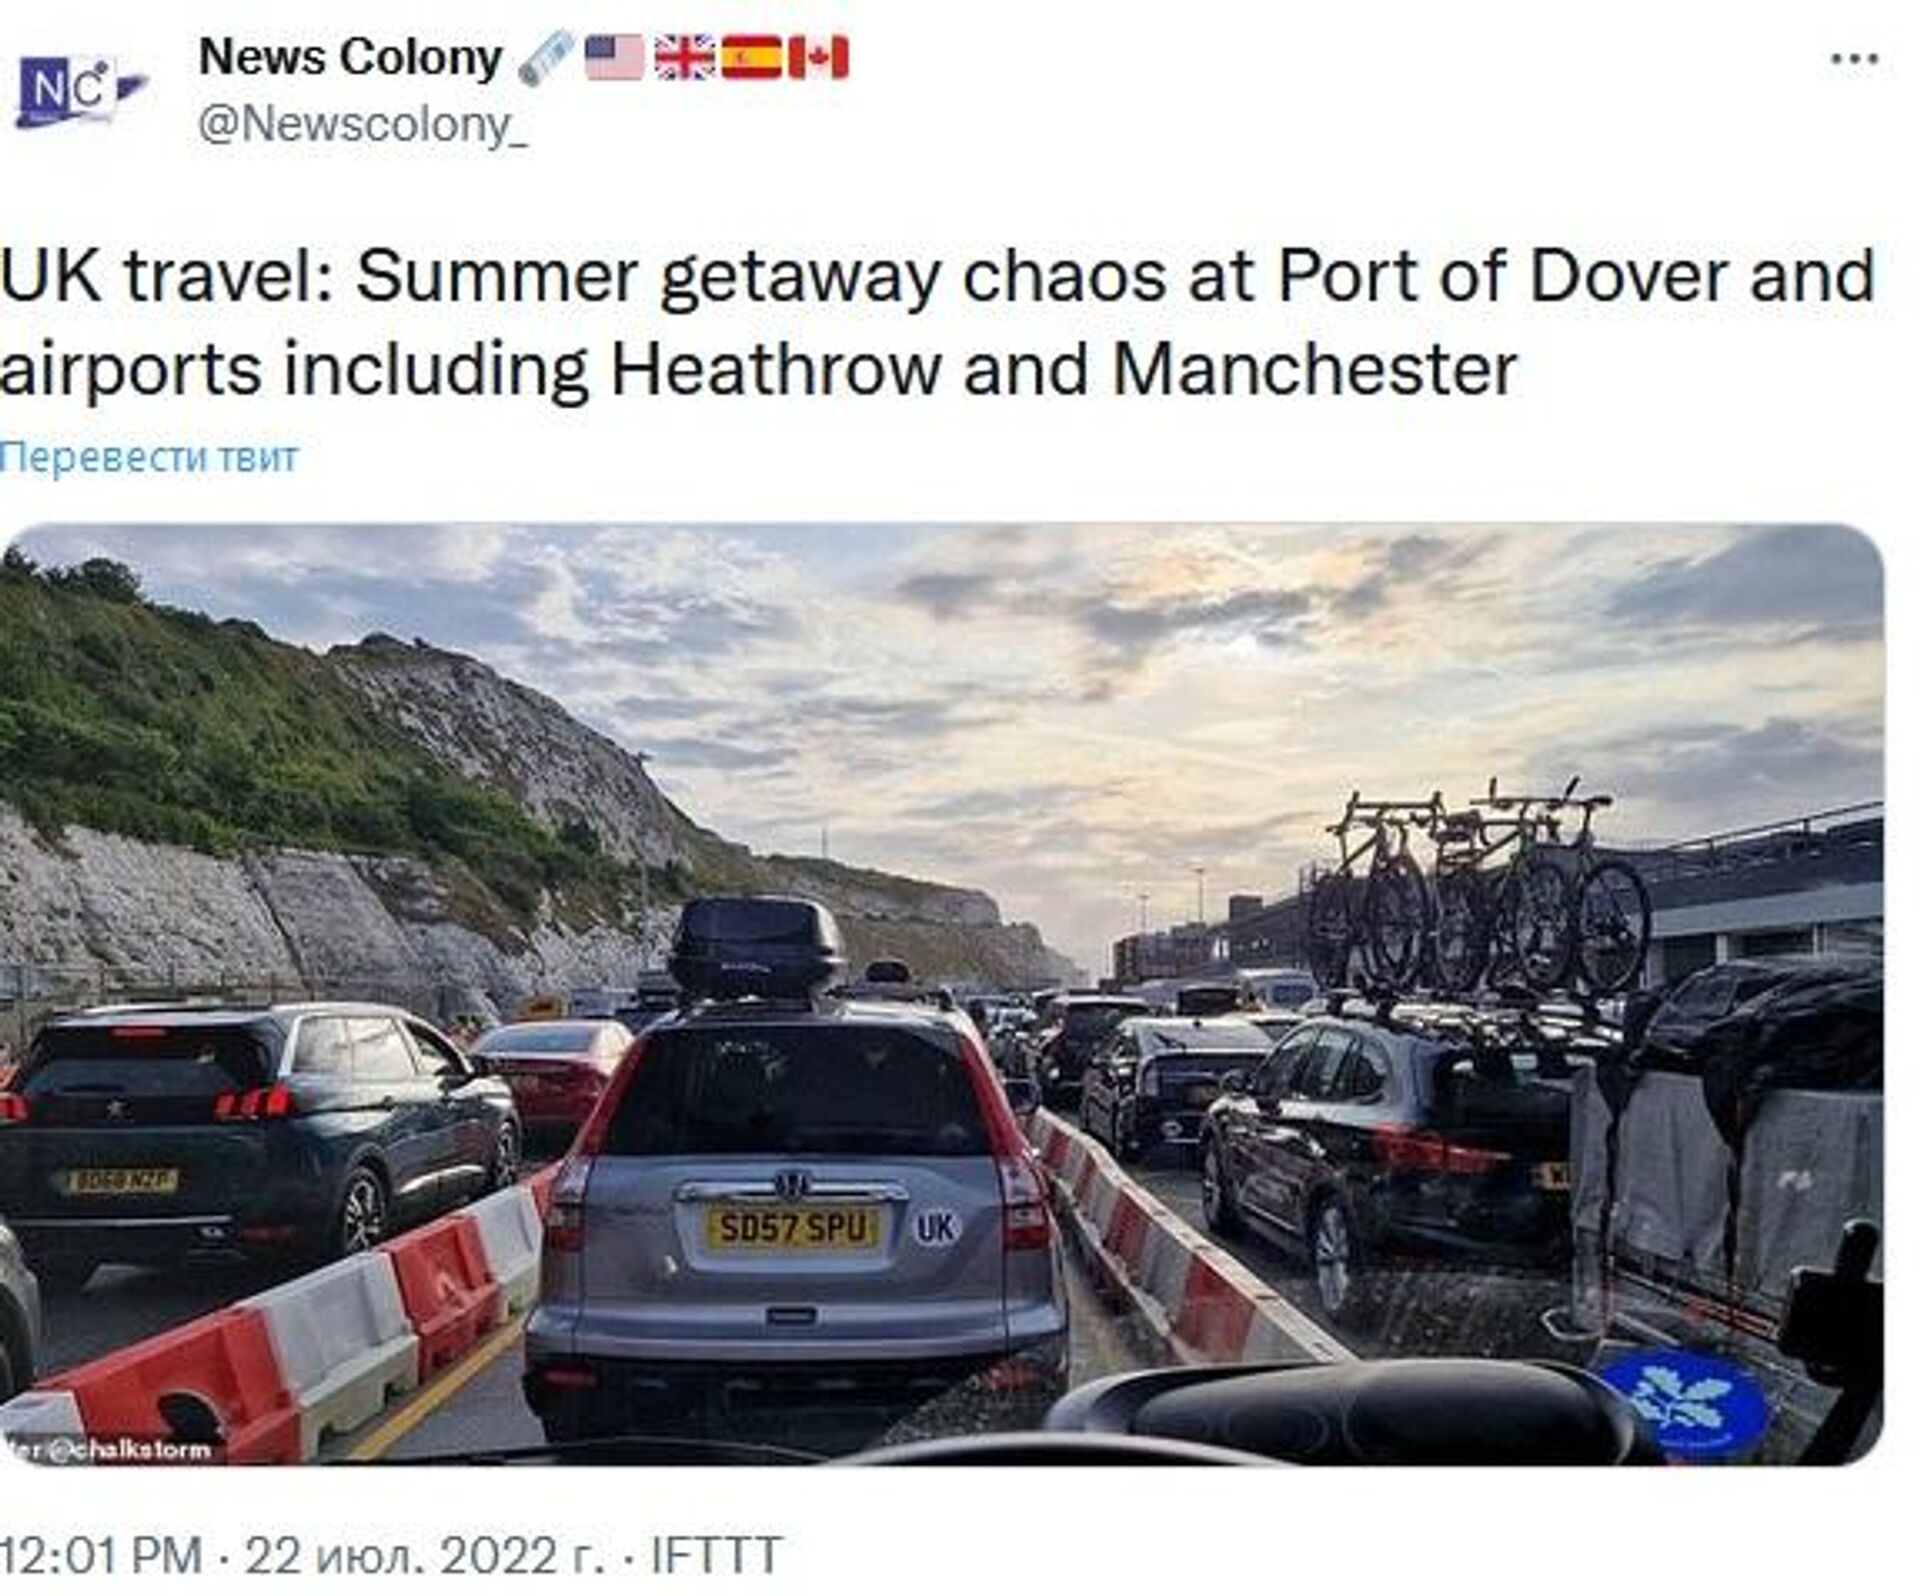 Travel chaos at Dover port, UK - Sputnik International, 1920, 23.07.2022